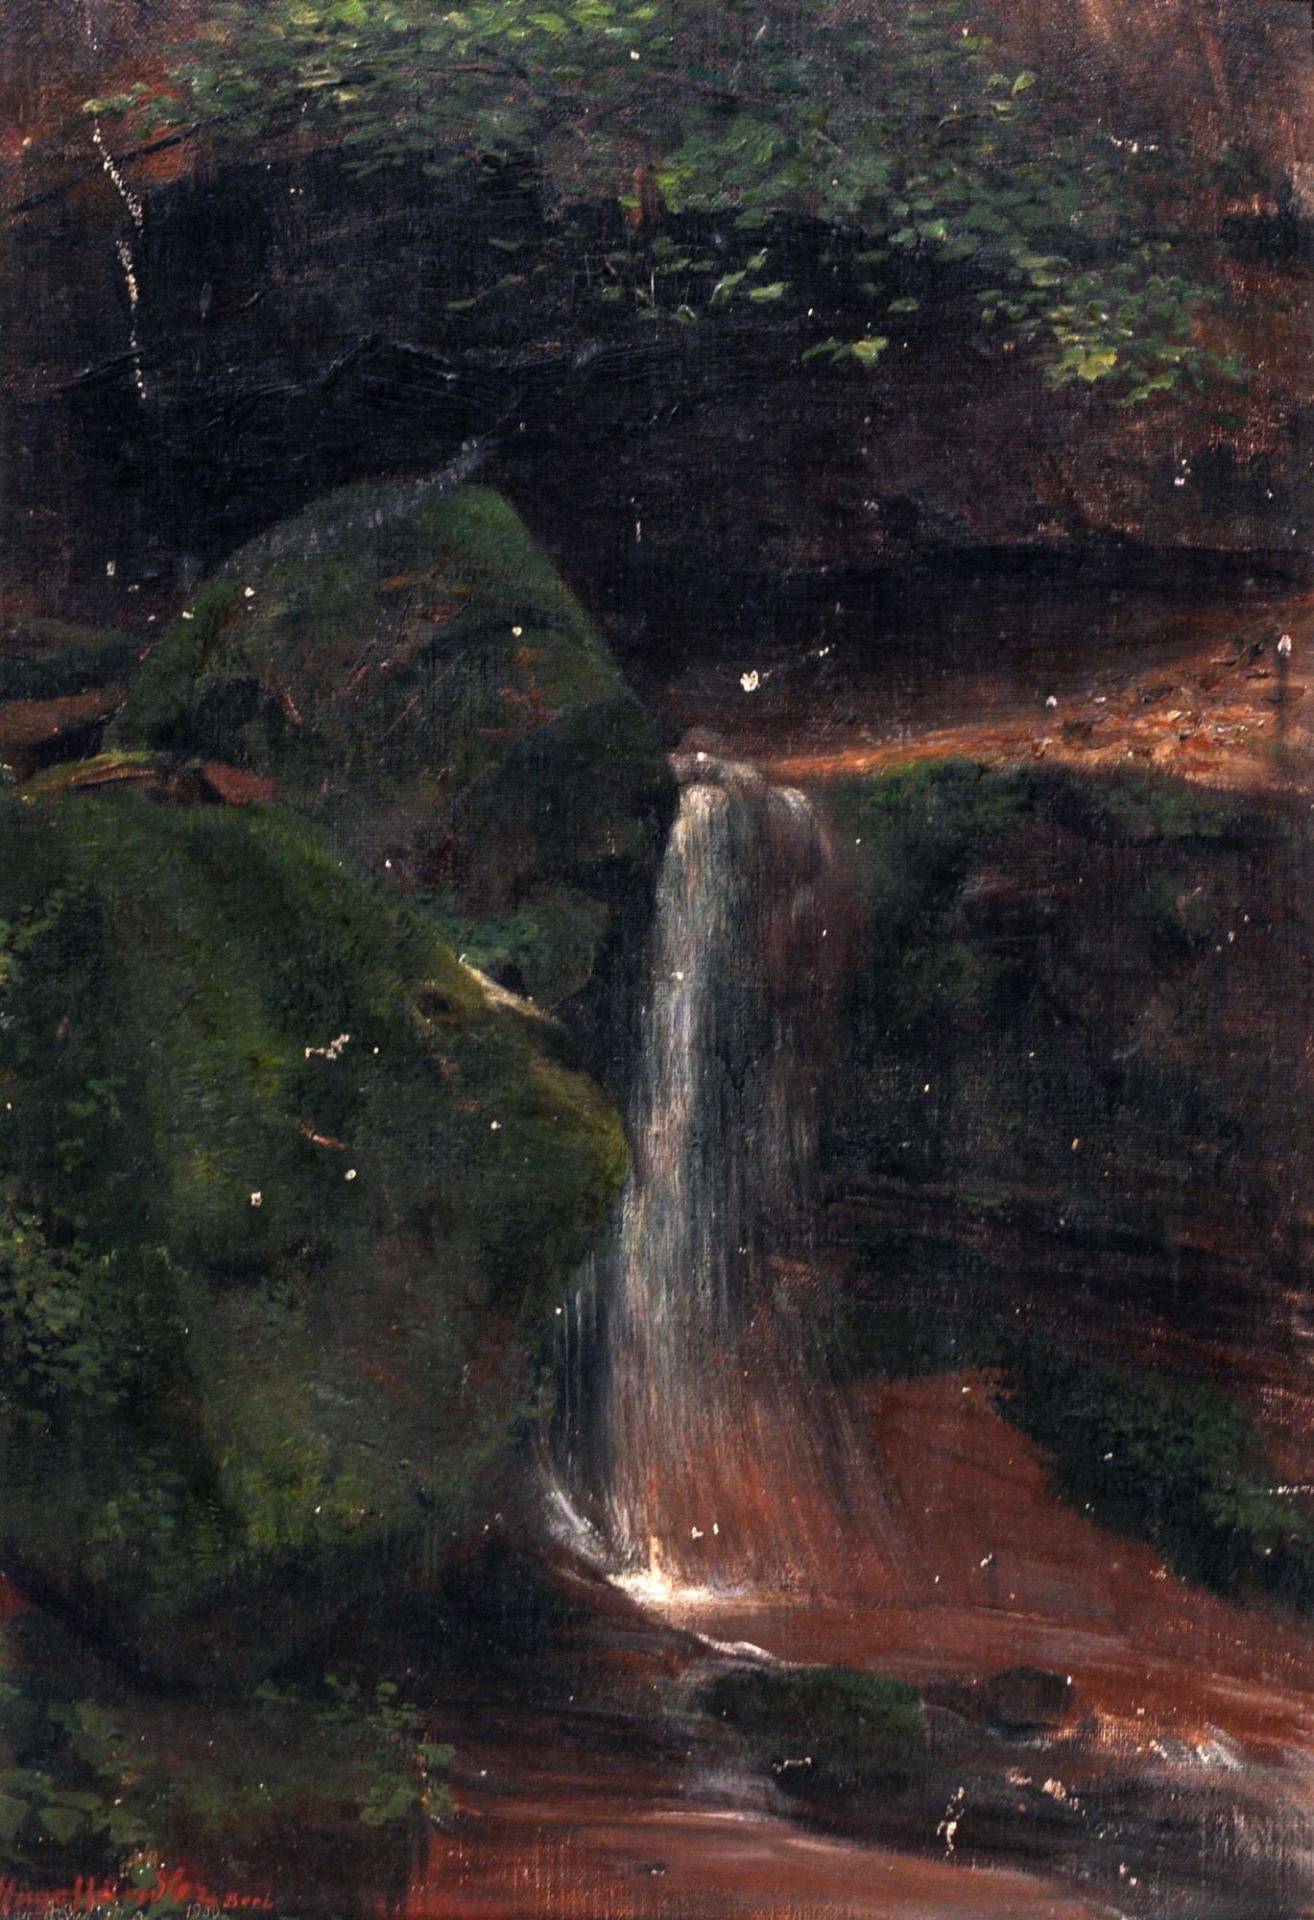 Hugo Händler, Bachlauf im Wald mit moosigen Felsen. 1900.